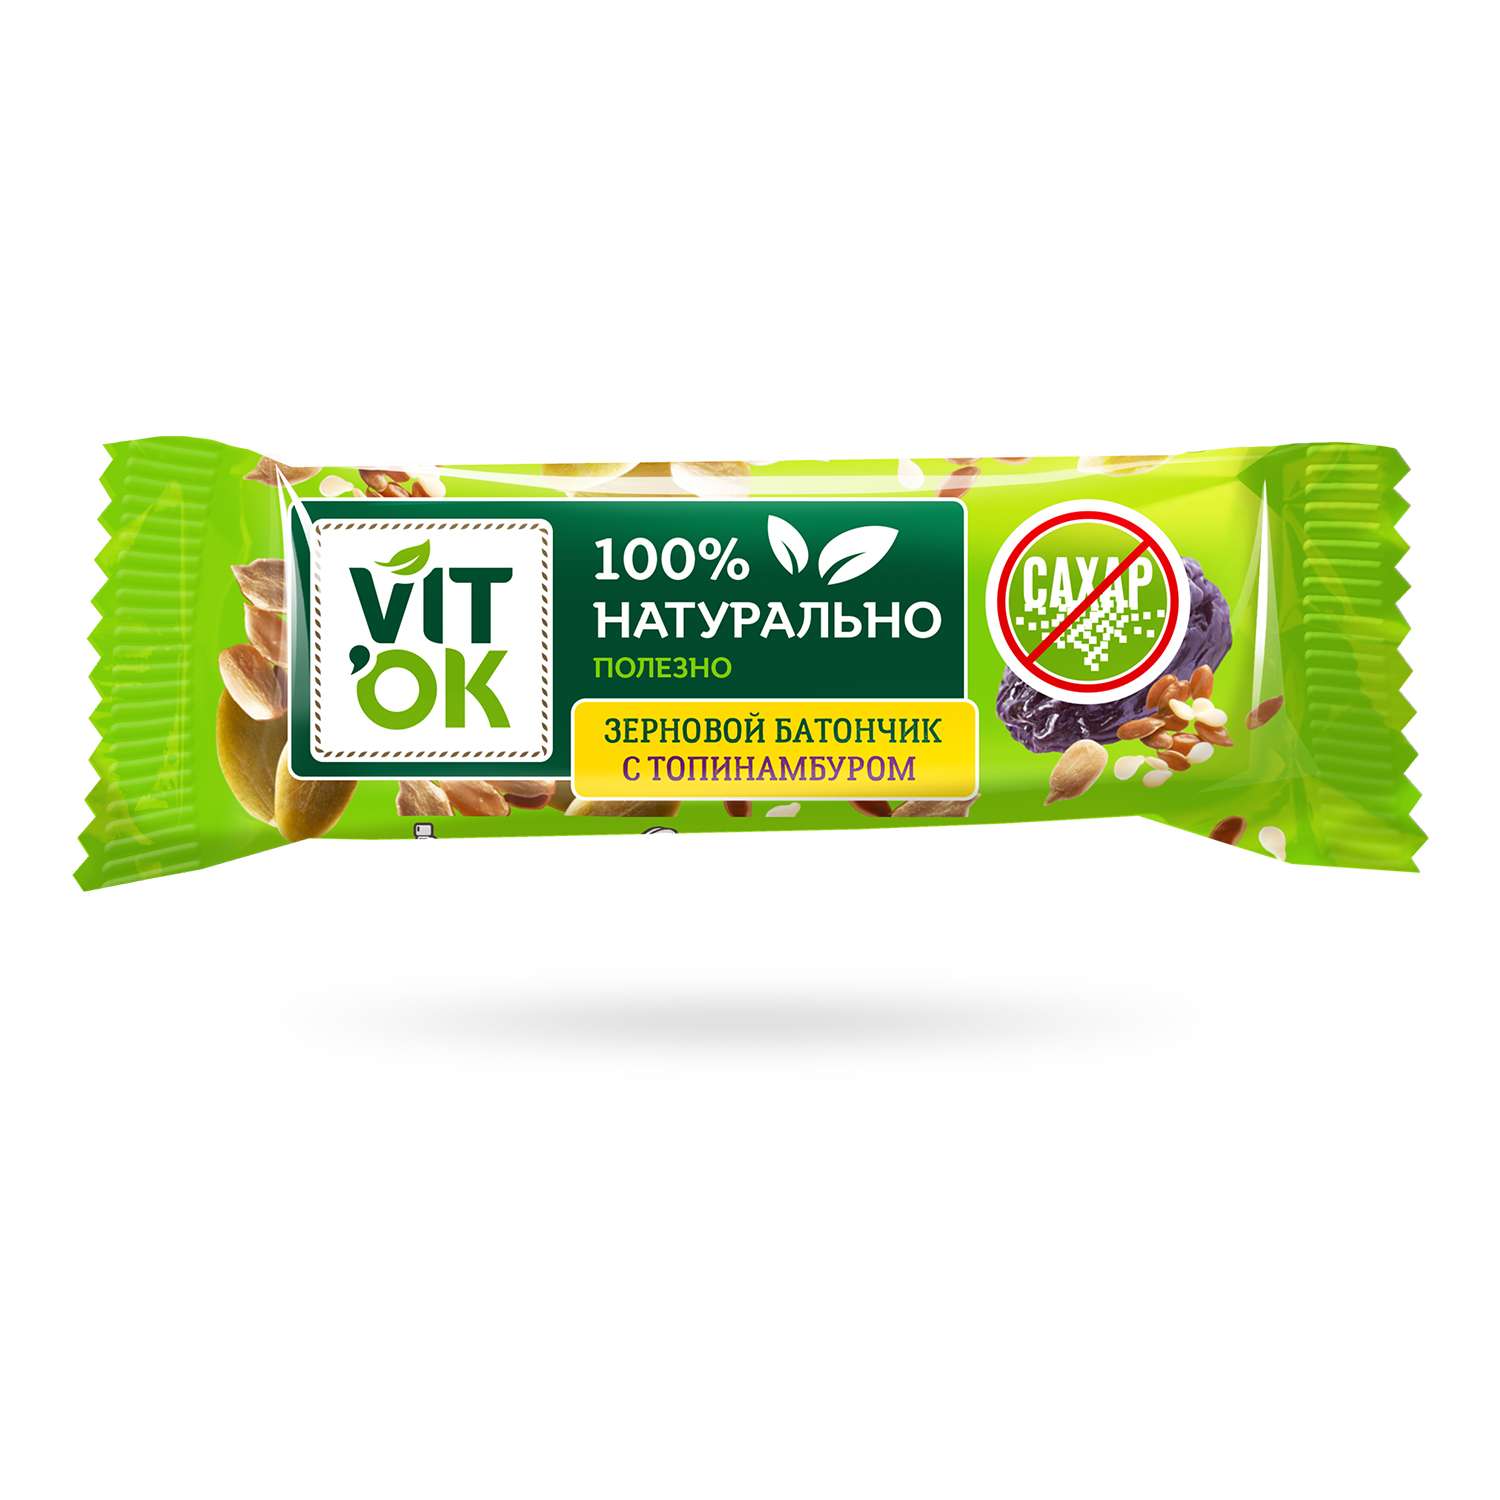 Батончики VITok Полезный 100% натуральный Чернослив и семечки без сахара 18 шт по 30 г - фото 2